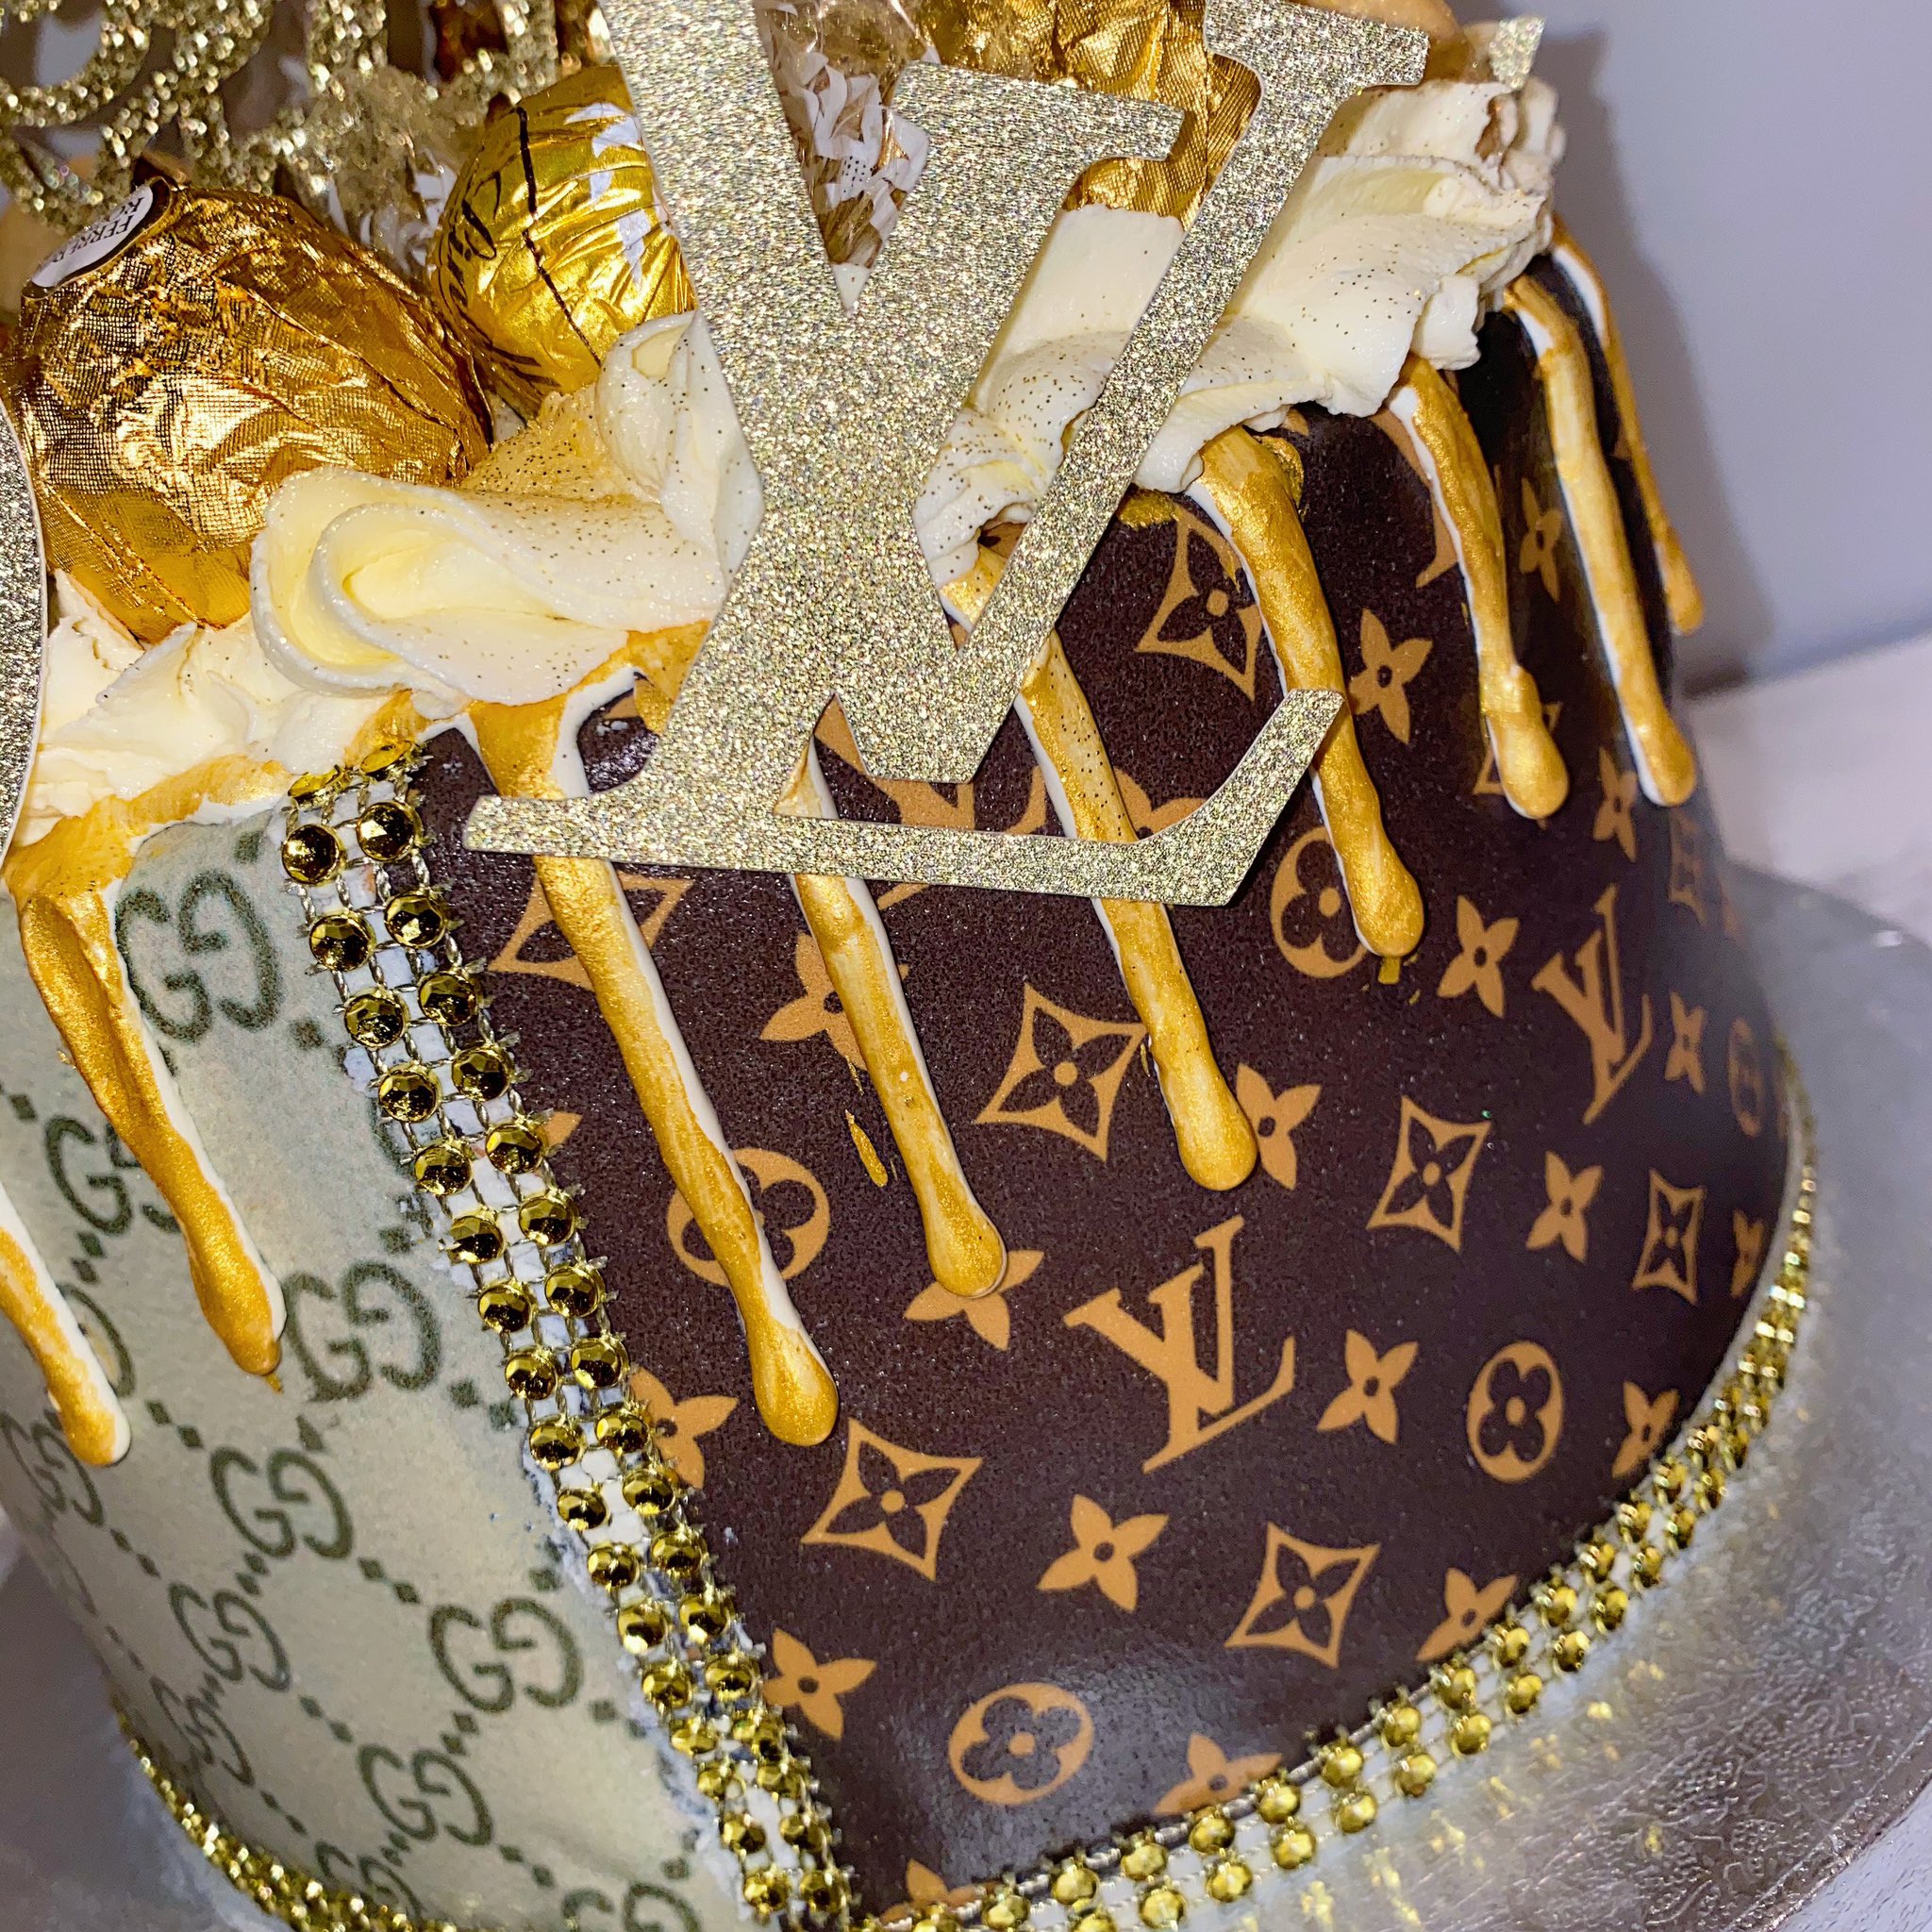 Abbie's AngelCakes 🍰 on X: Half Gucci / Half Louis Vuitton Cake